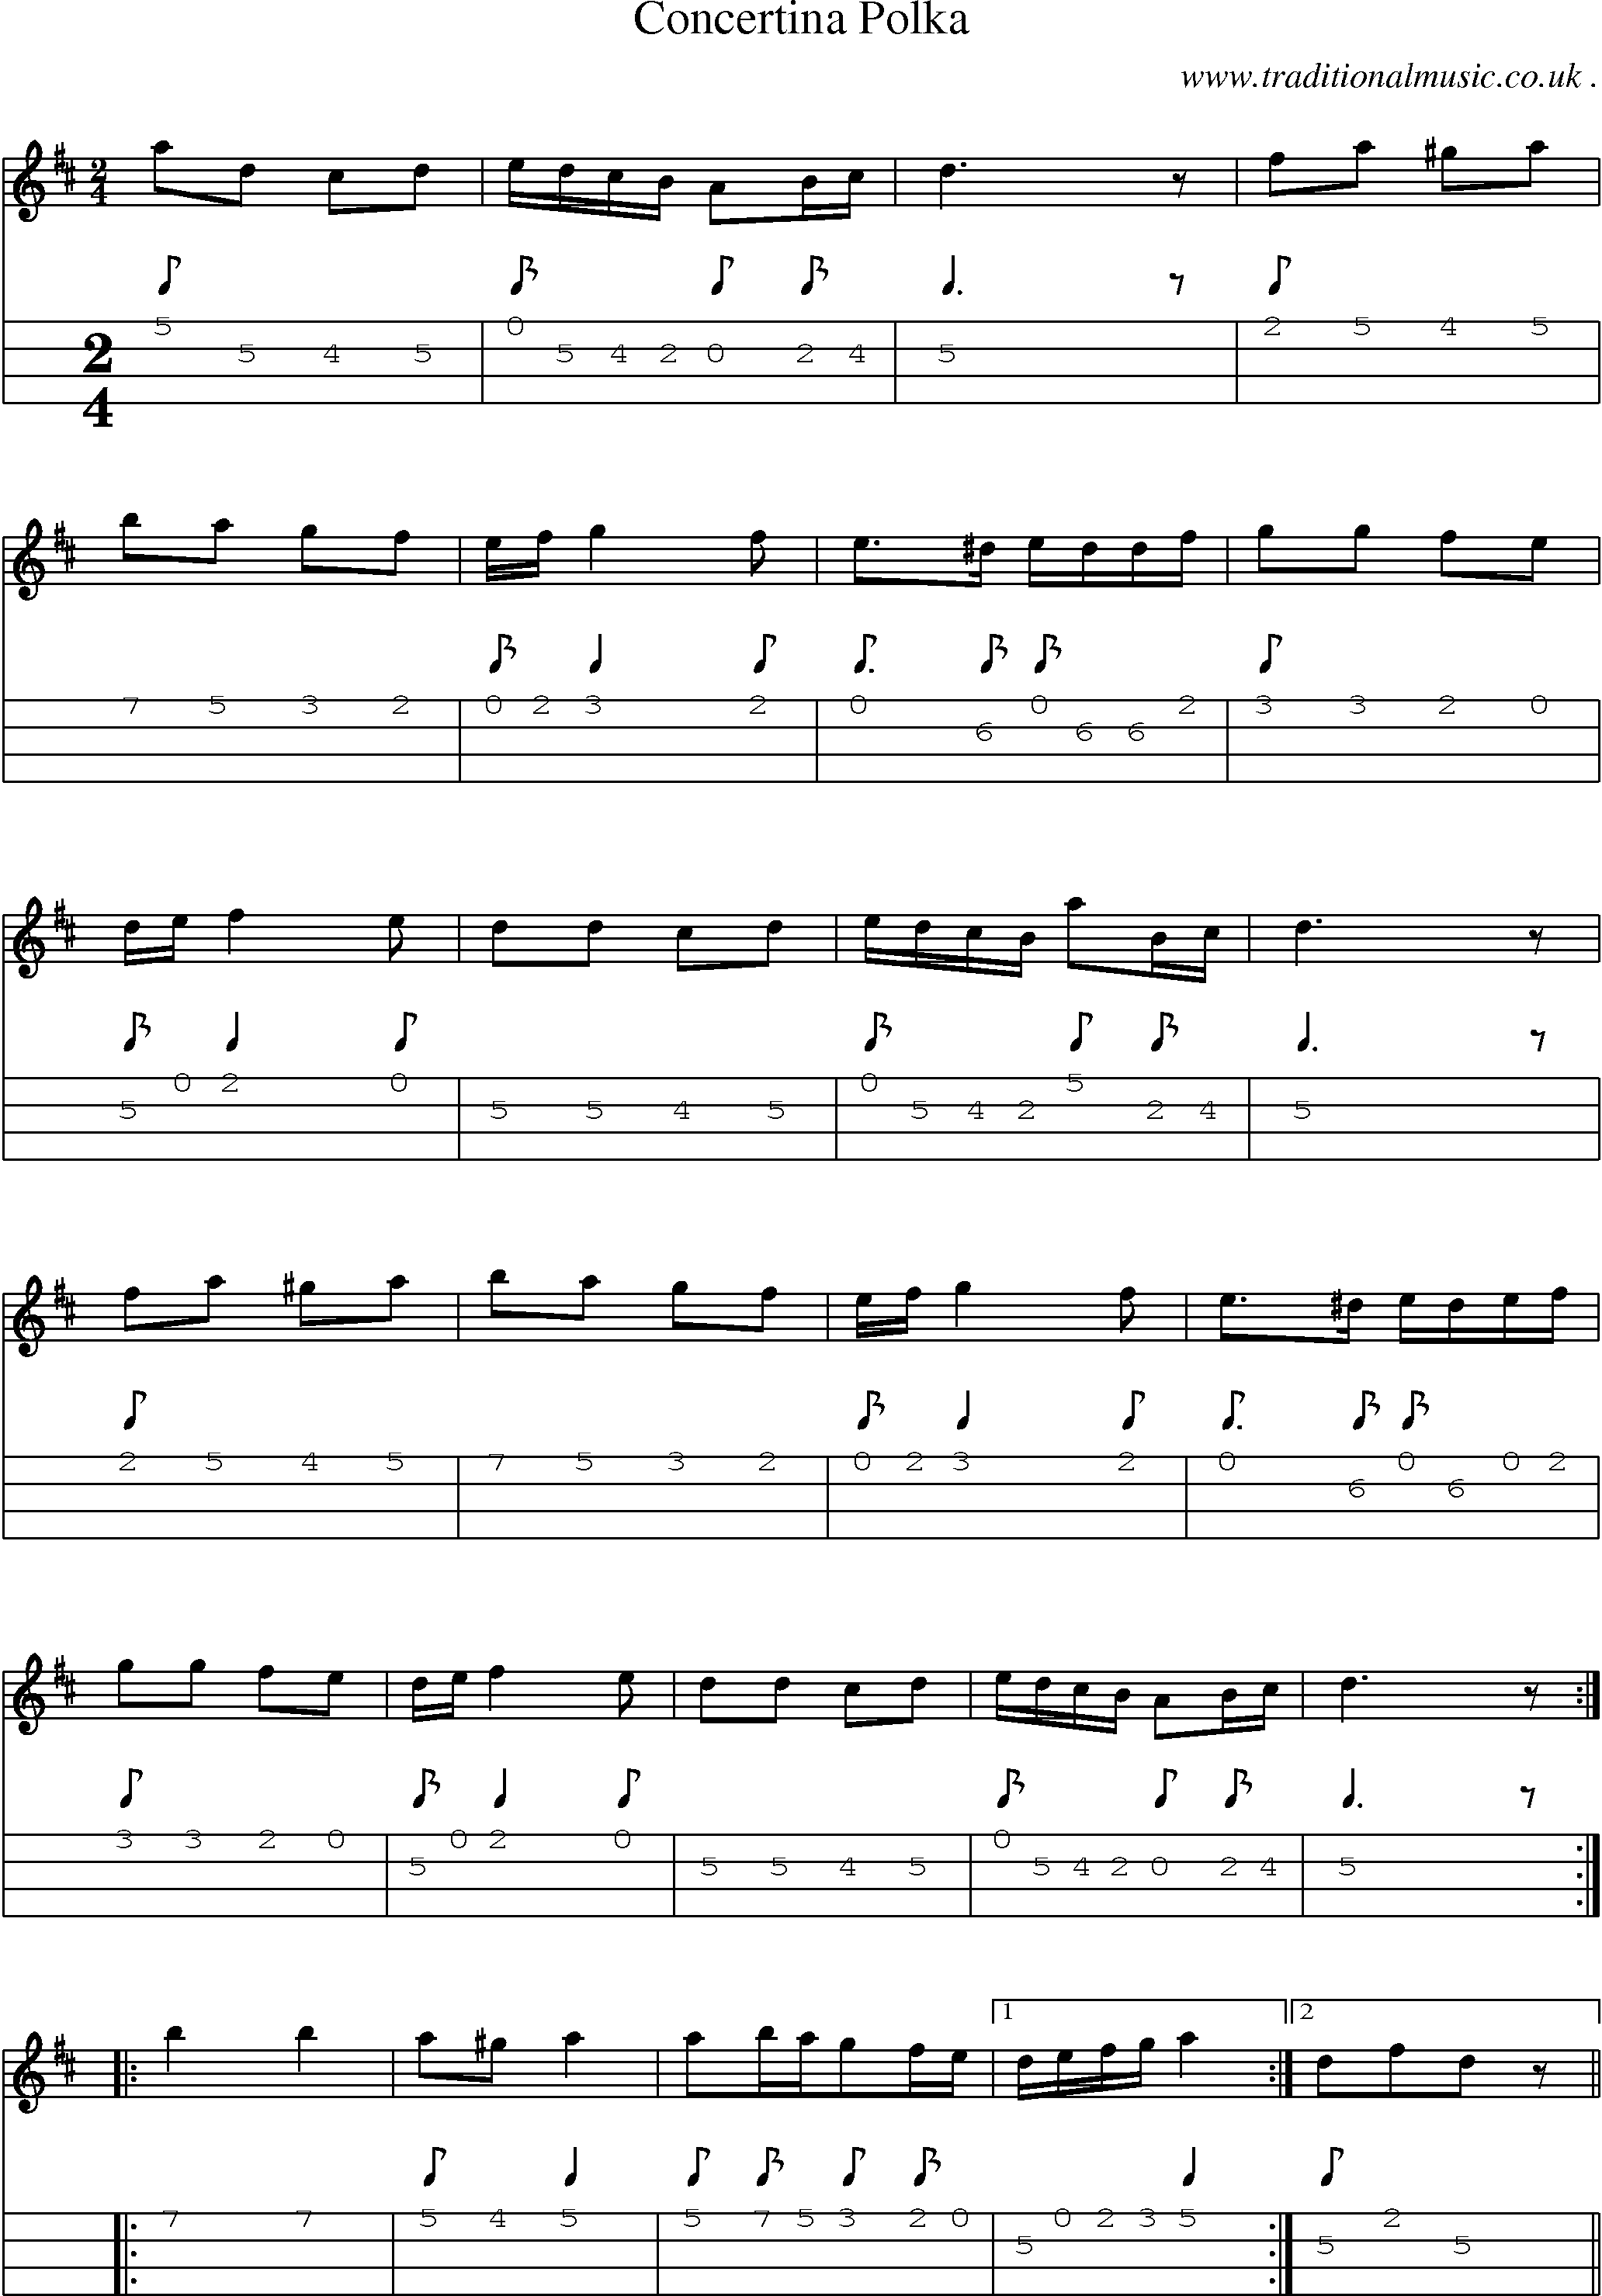 Sheet-Music and Mandolin Tabs for Concertina Polka